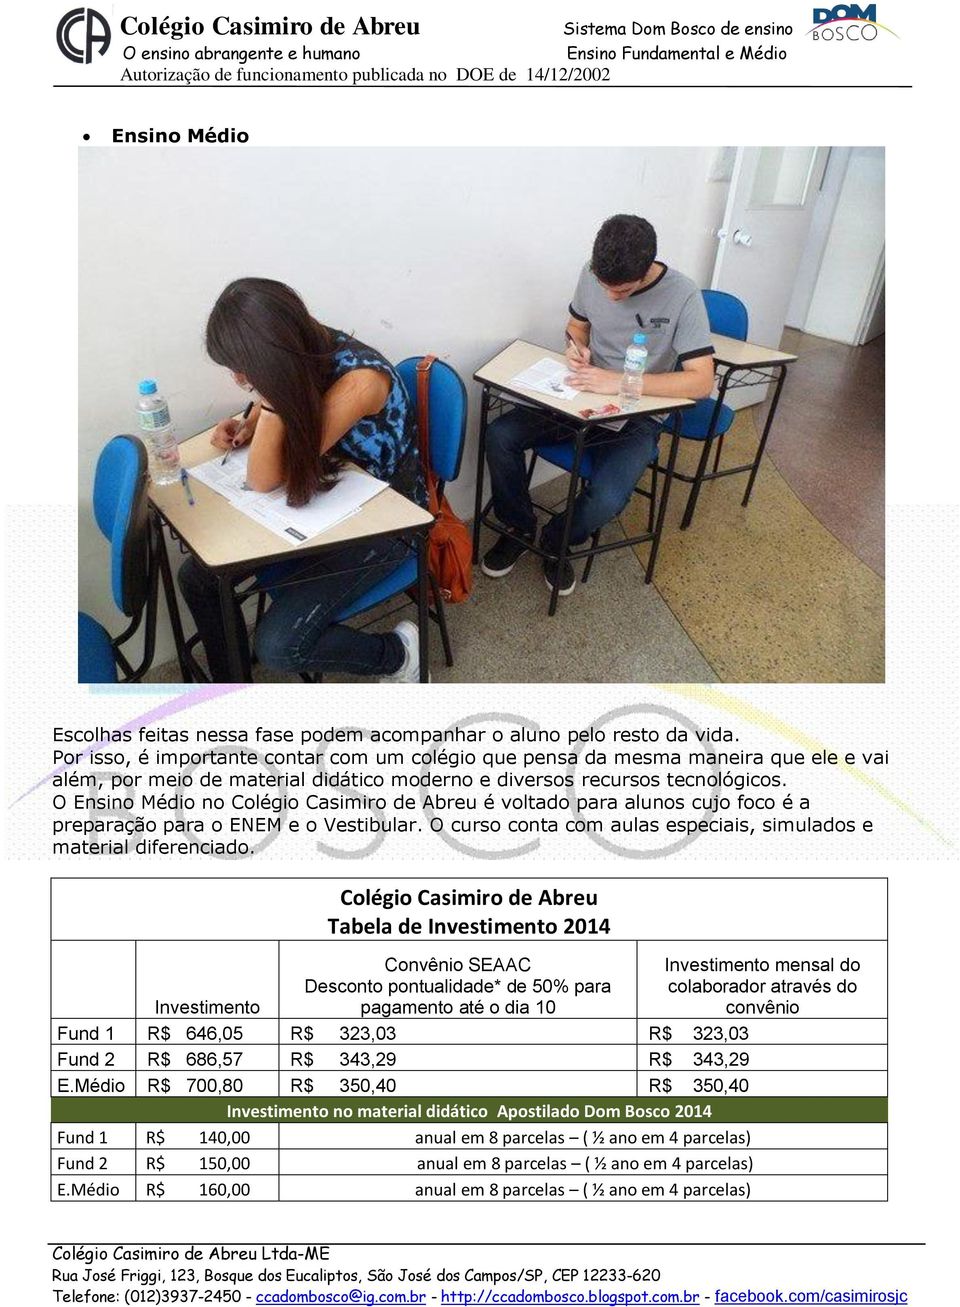 O Ensino Médio no Colégio Casimiro de Abreu é voltado para alunos cujo foco é a preparação para o ENEM e o Vestibular. O curso conta com aulas especiais, simulados e material diferenciado.